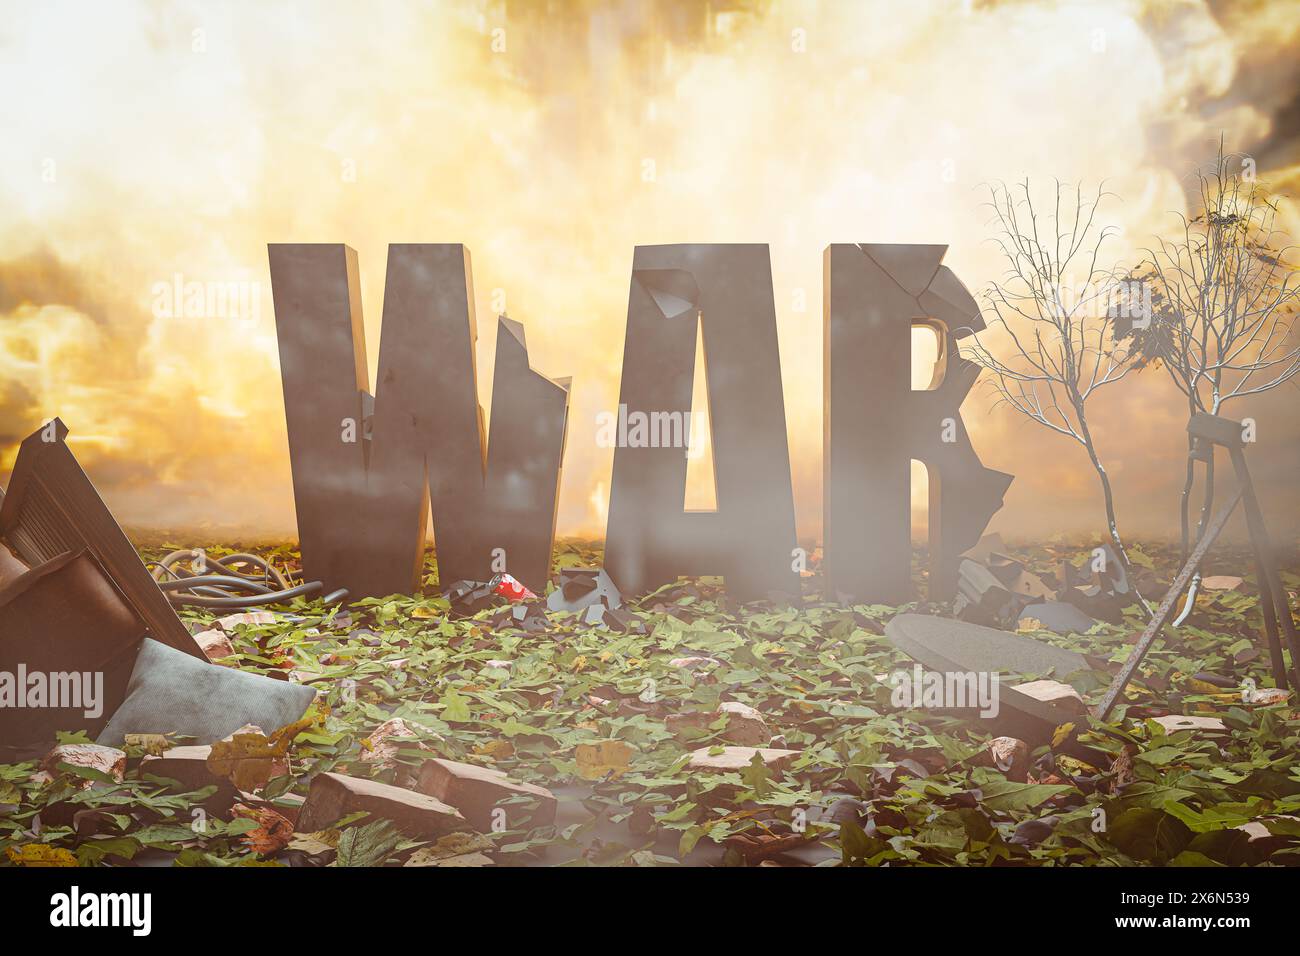 La guerre de mots partiellement détruite dans un environnement détruit avant une conflagration massive à la suite d'une explosion - illustration 3D. Banque D'Images